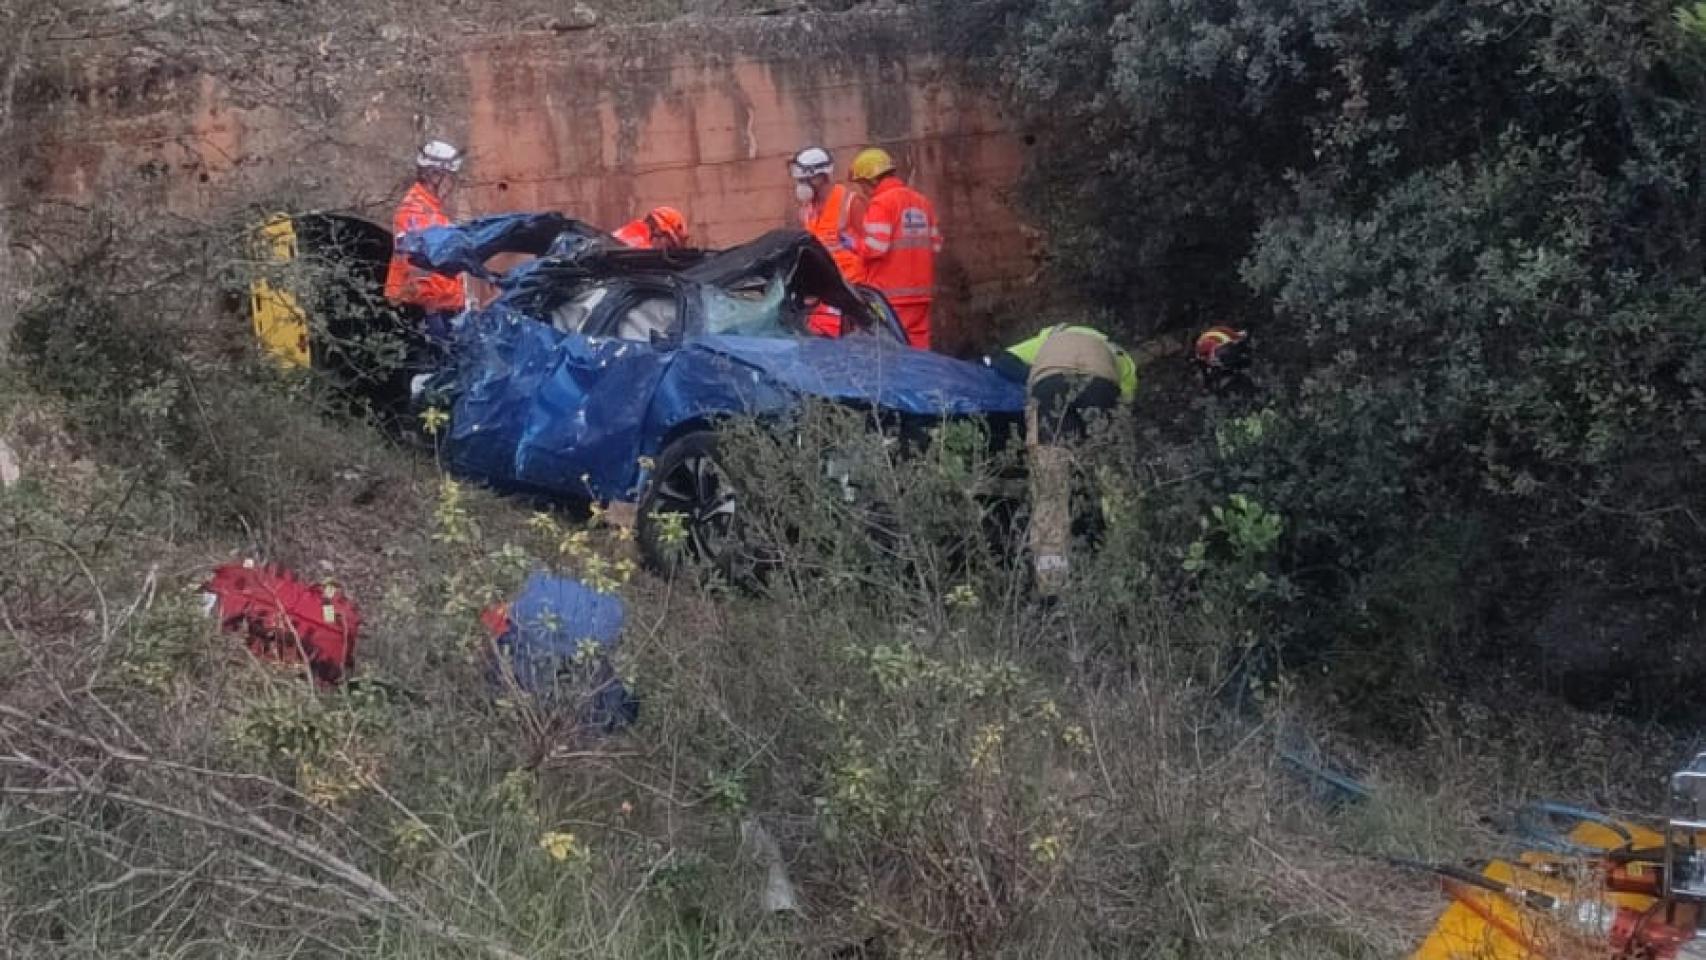 Imagen del vehículo tras el accidente en Soria